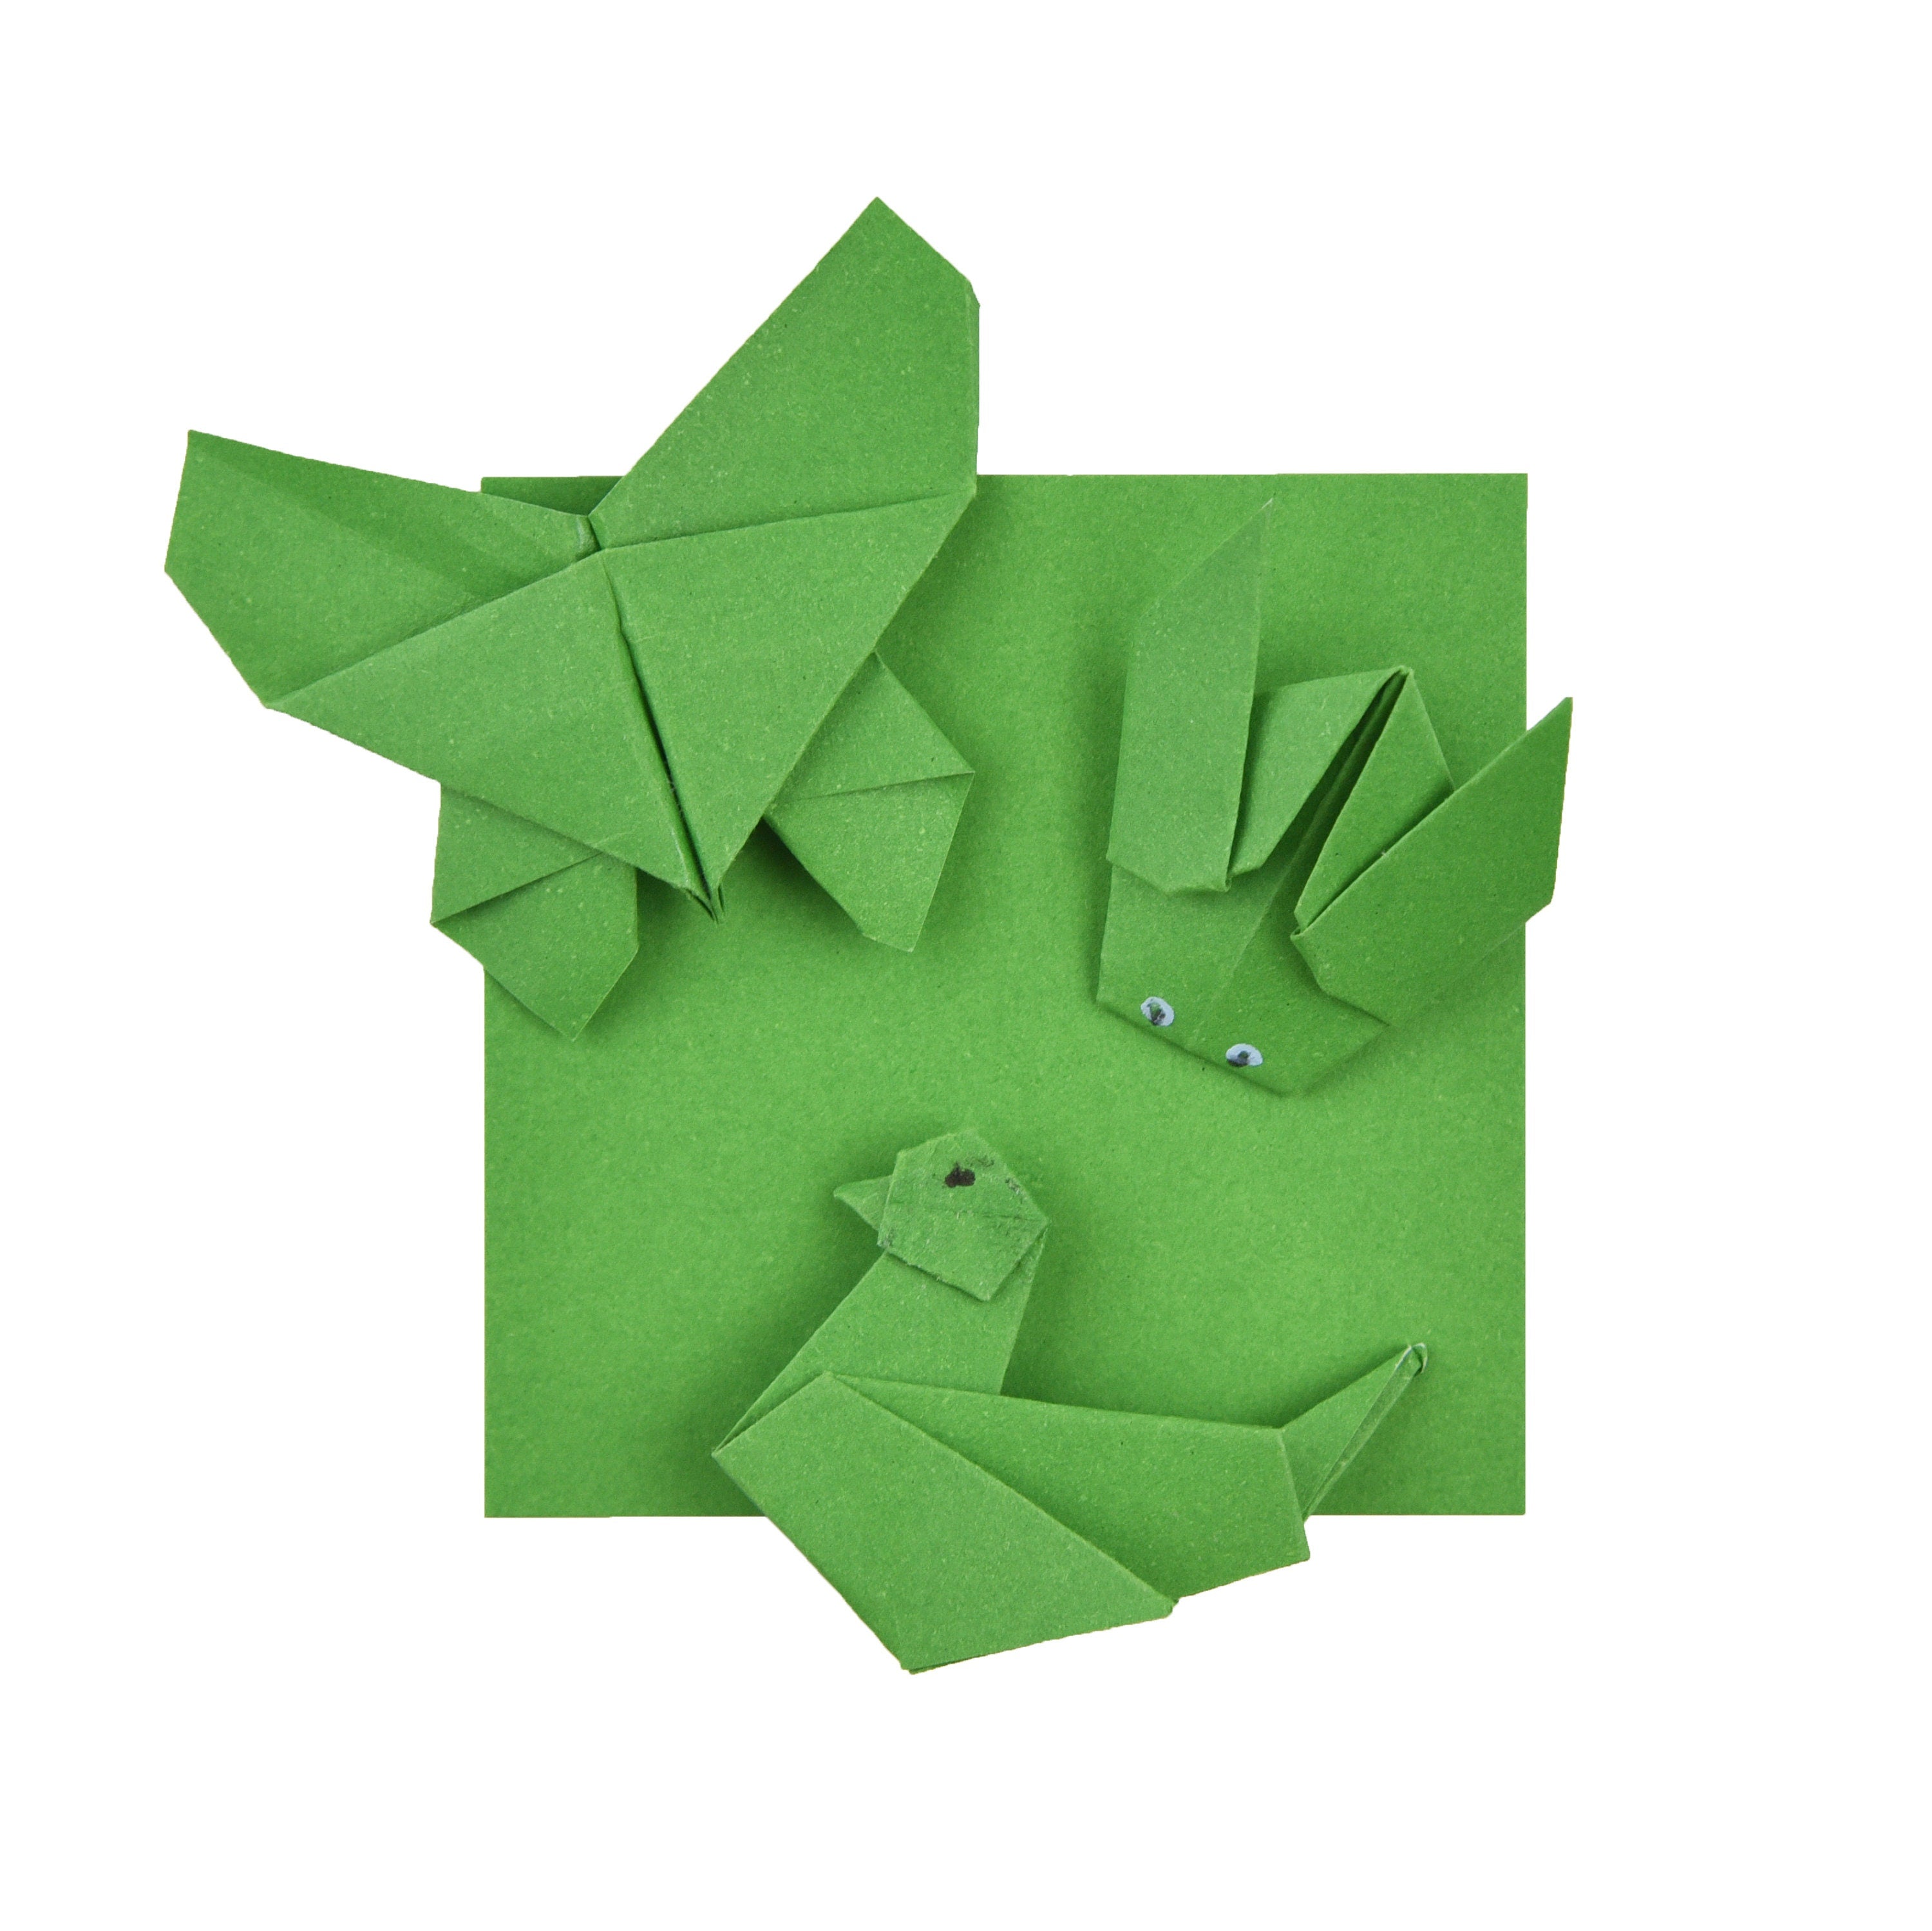 100 fogli di carta origami - 3x3 pollici - Confezione di carta quadrata per piegare, gru origami e decorazioni - S22